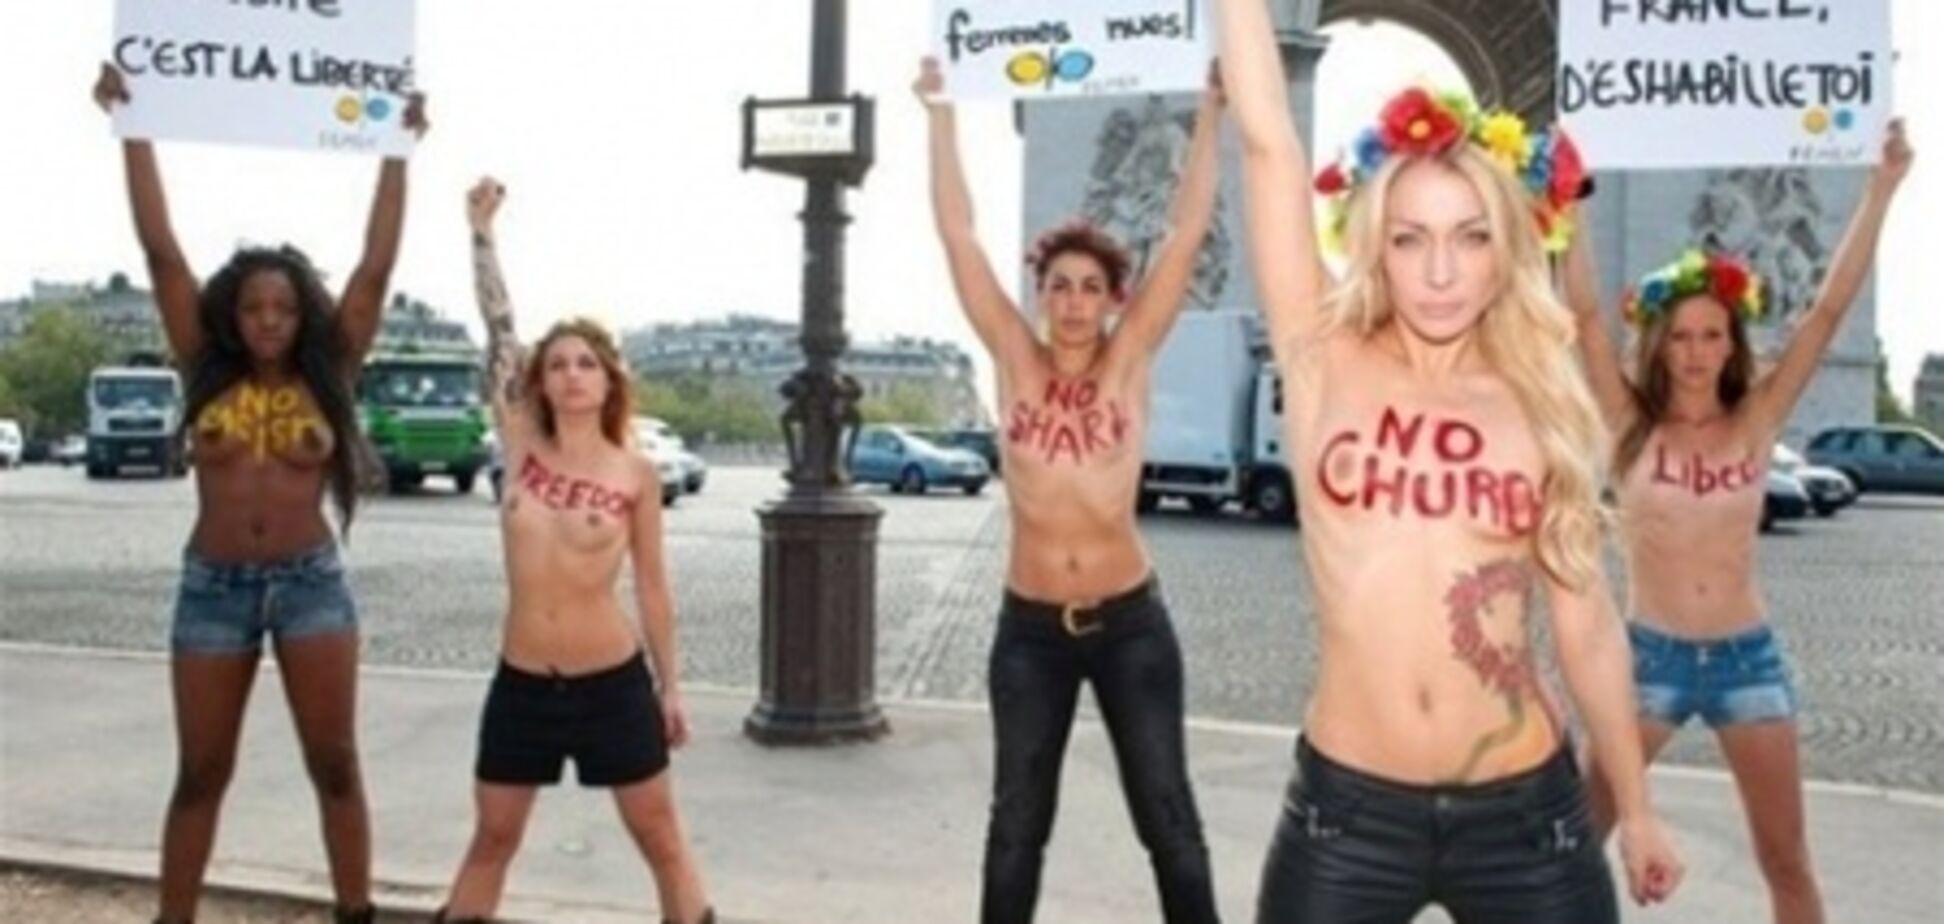 Во Франции зарегистрировали FEMEN, в Украине – нет 